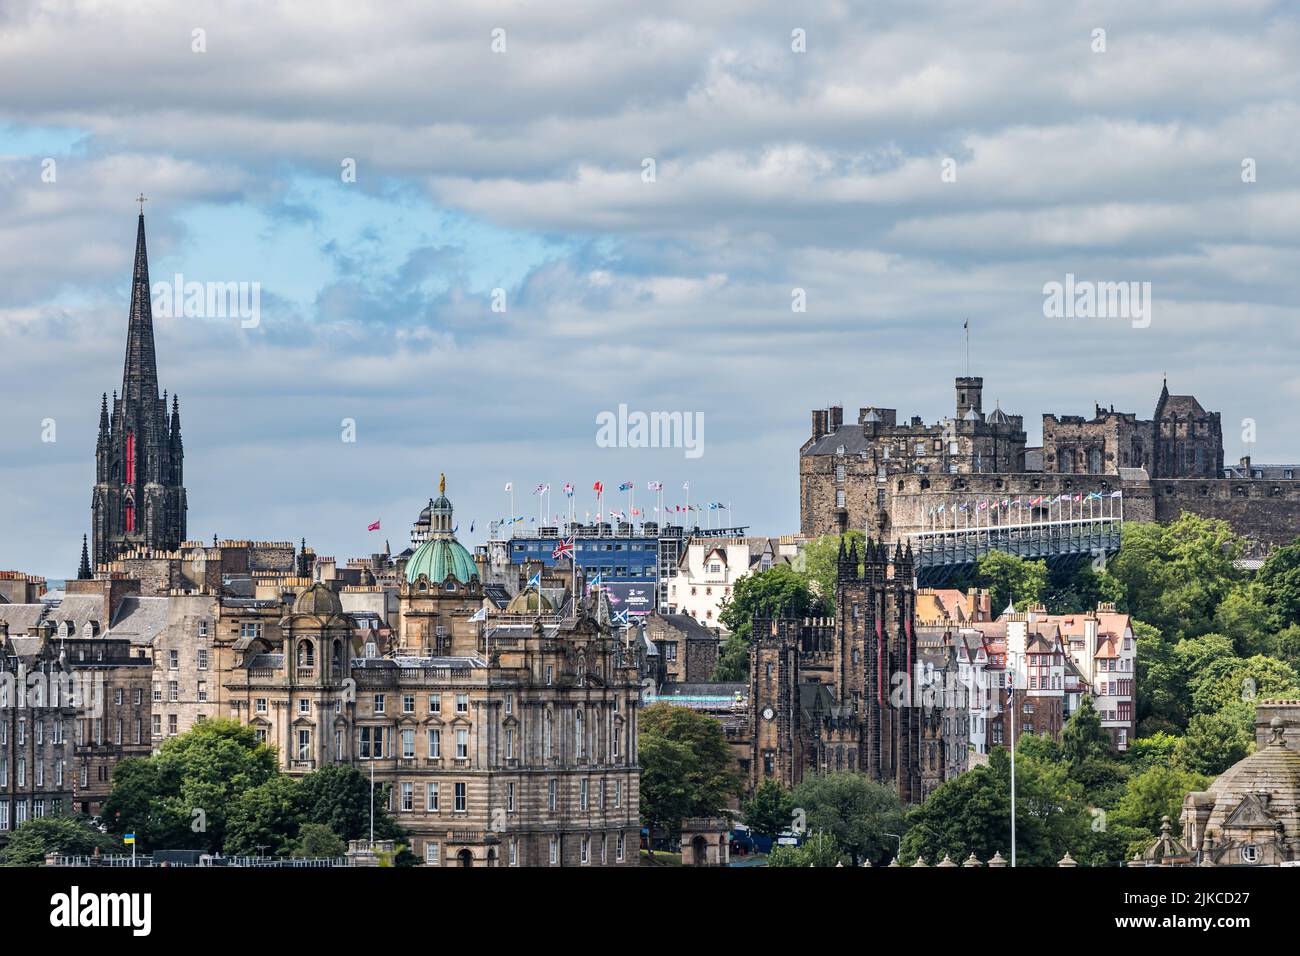 Vista desde Calton Hill sobre el horizonte de la ciudad con el Castillo de Edimburgo listo para el Tattoo militar en agosto, Escocia, Reino Unido Foto de stock